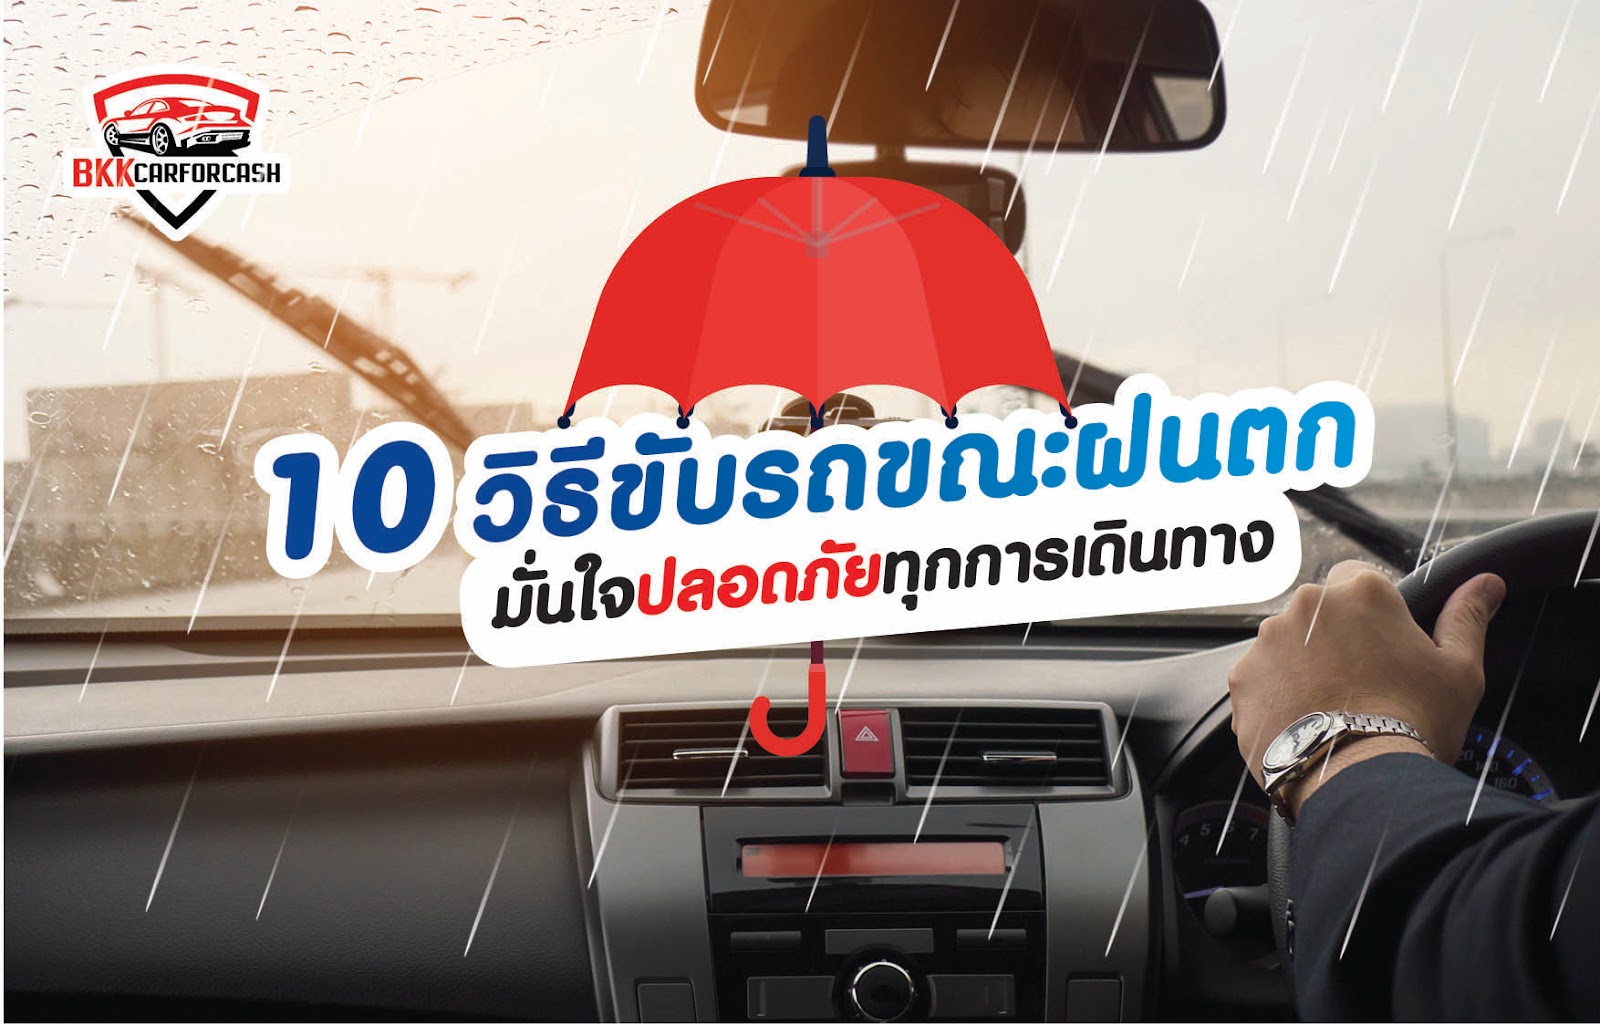 10 วิธีขับรถขณะฝนตกยังไง ให้ปลอดภัยทุกการเดินทาง